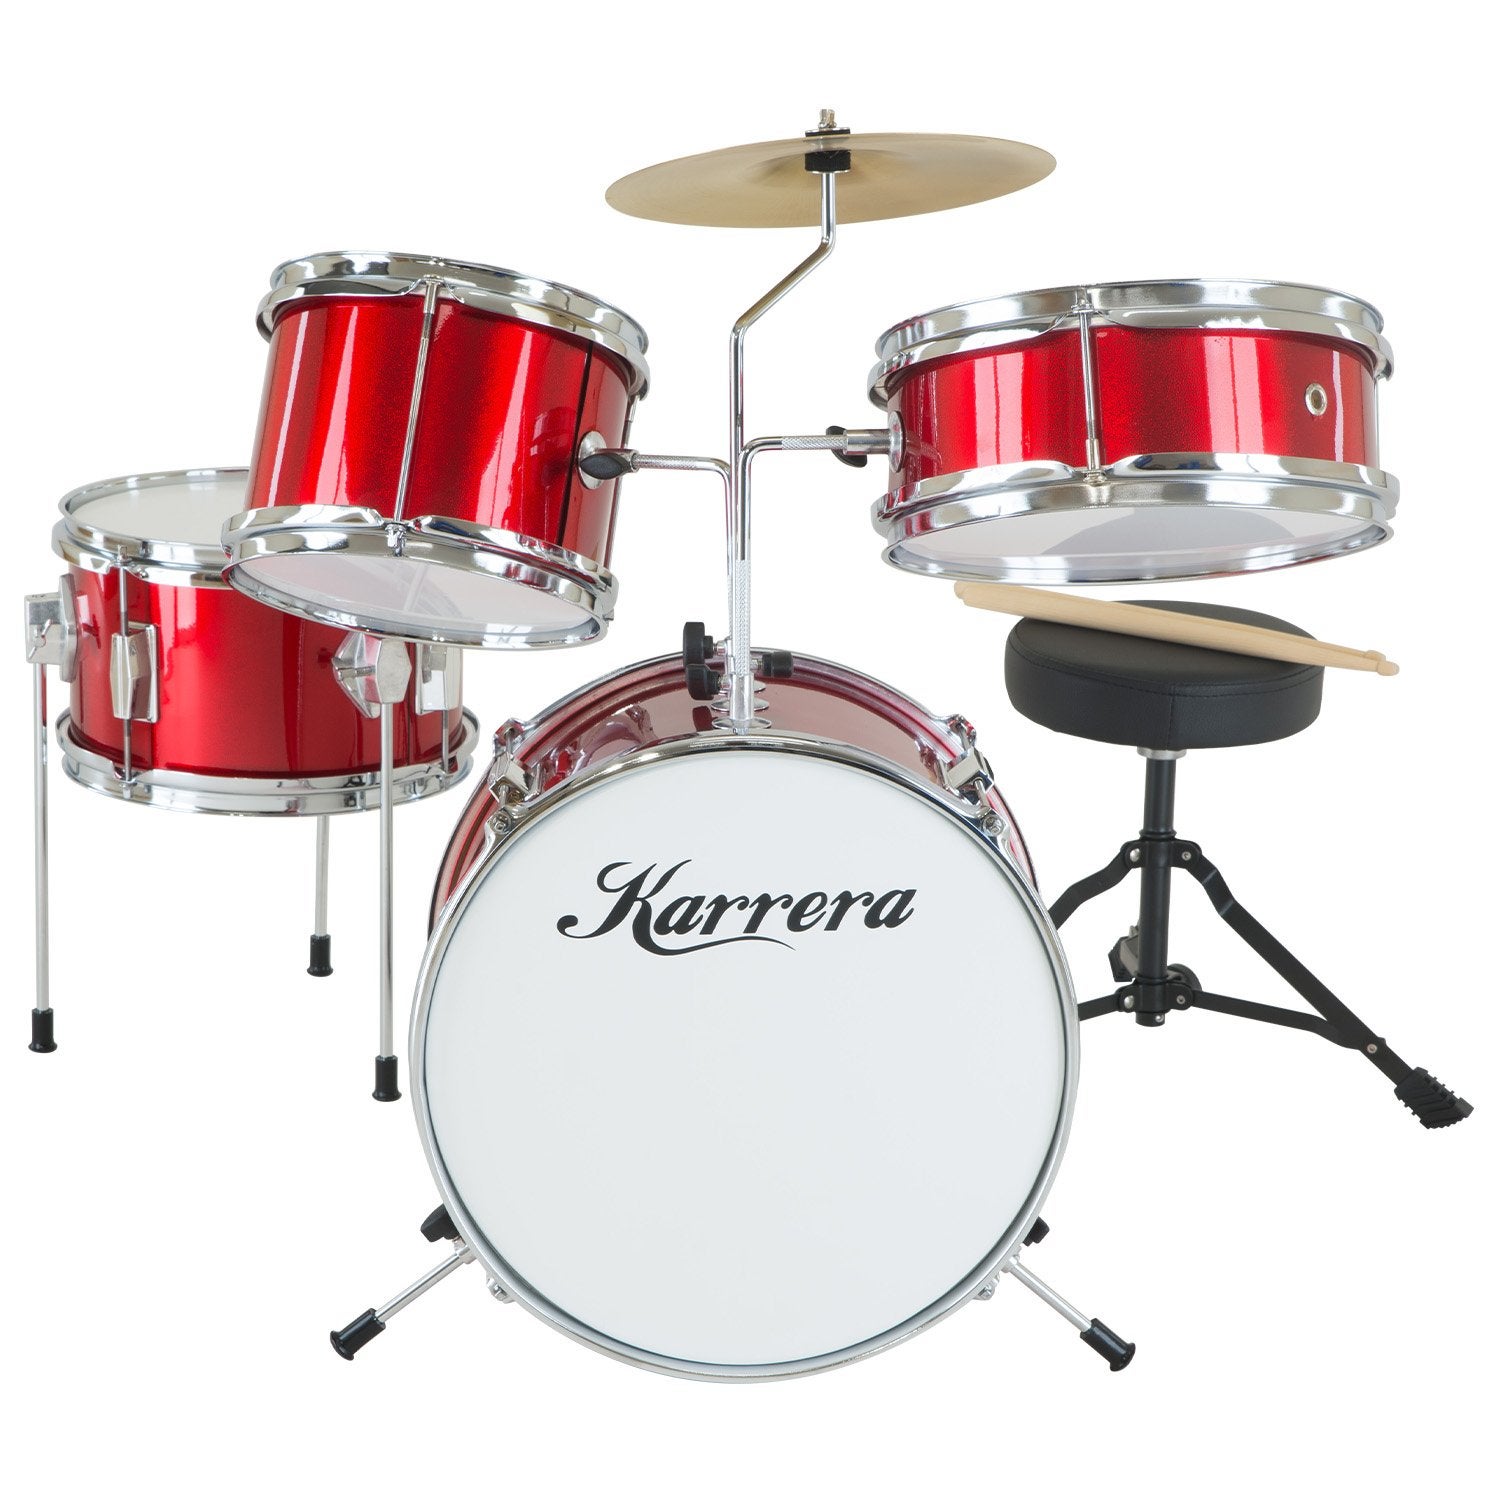 Karrera Childrens 4 Piece Drum Kit Set - Red